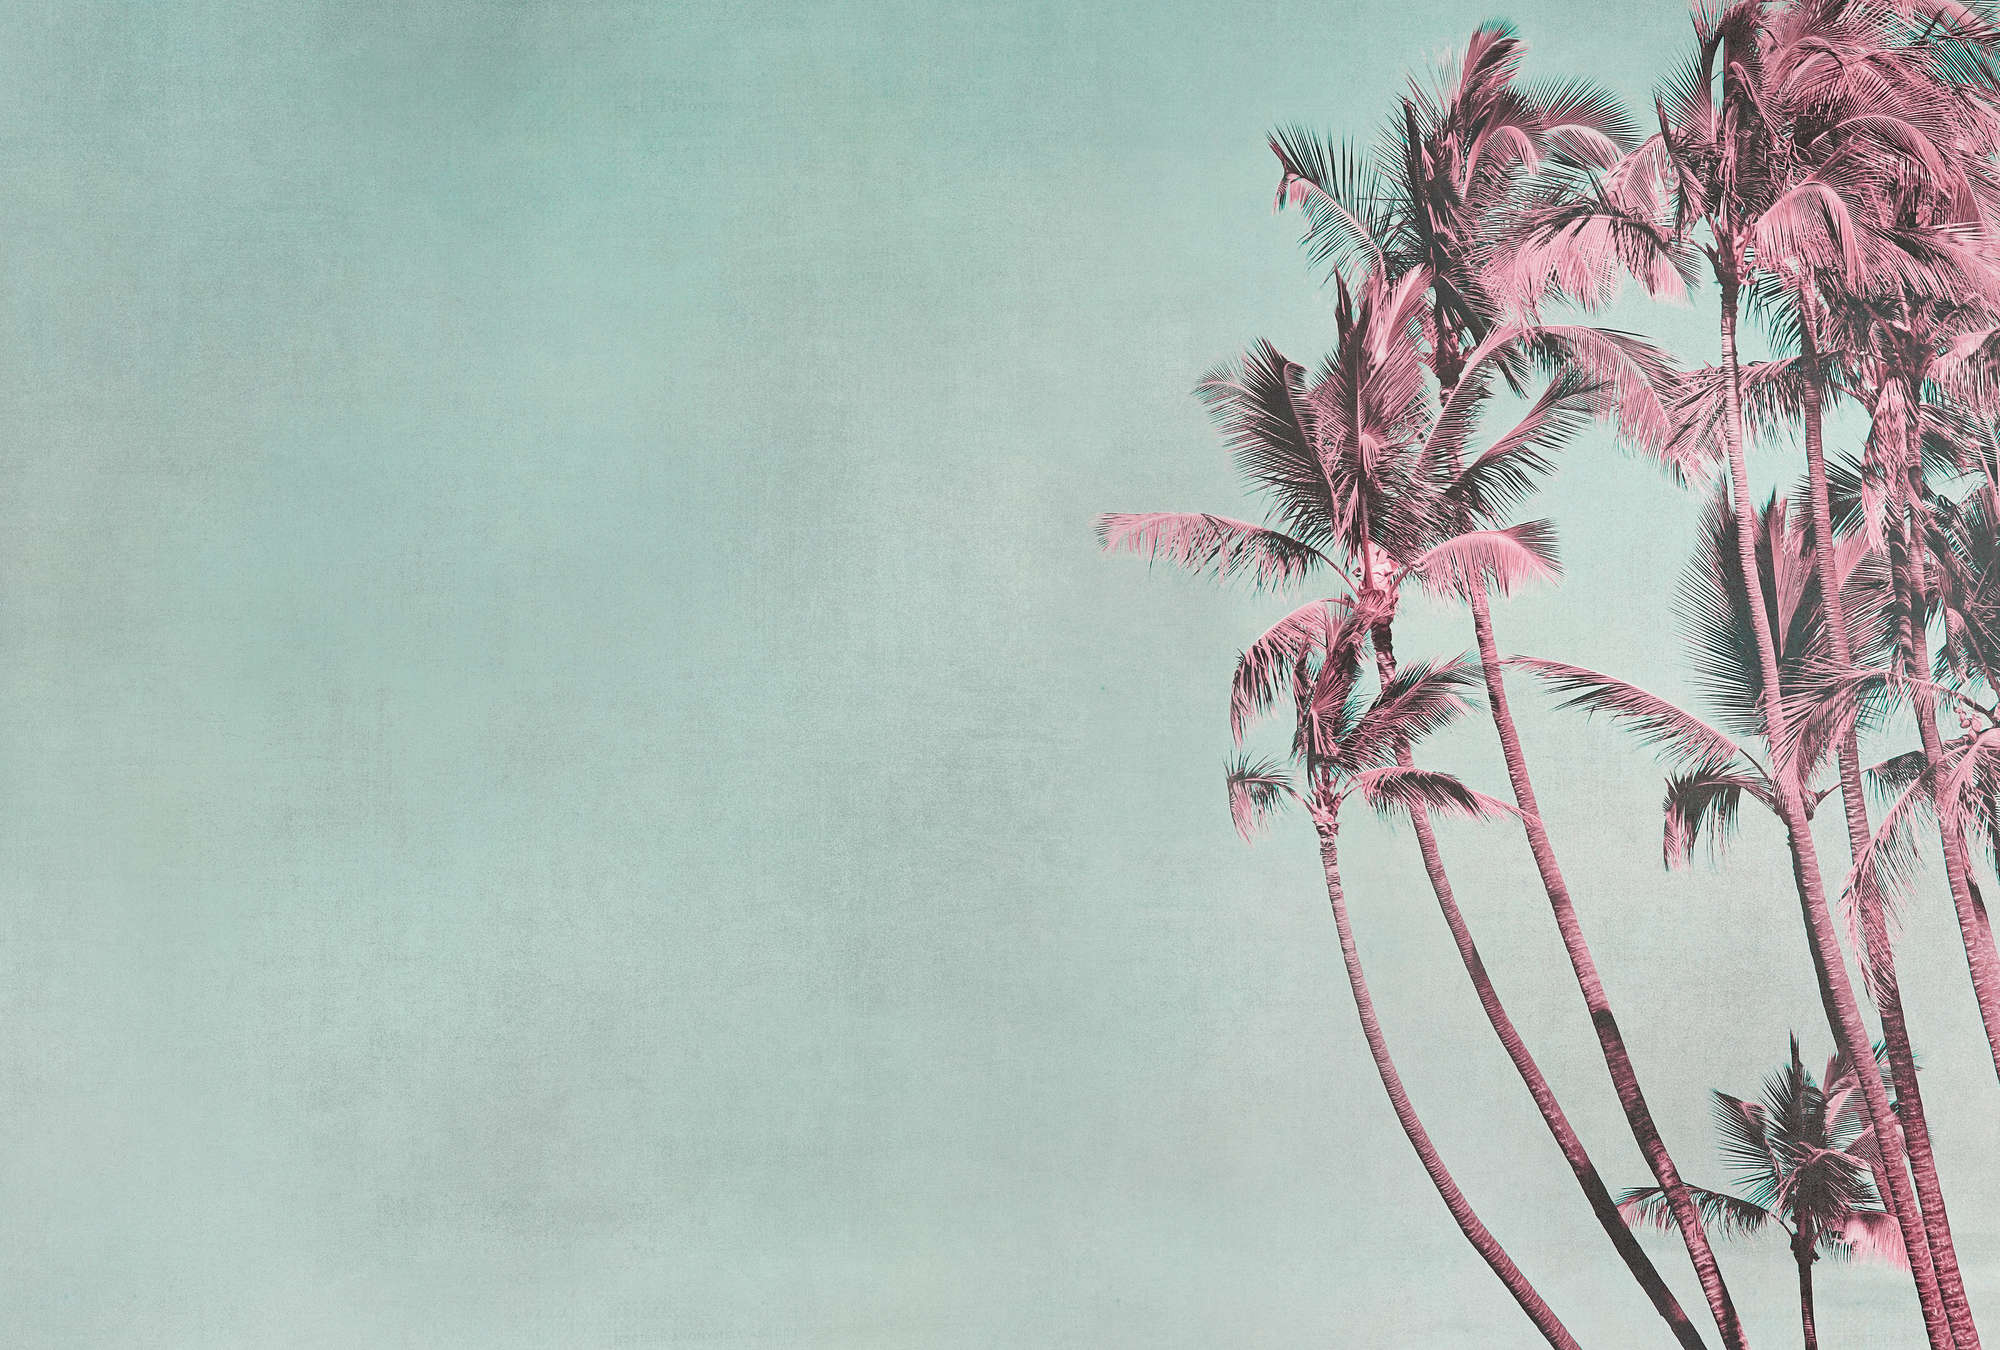             Papier peint panoramique palmier Tropical Breeze en turquoise & rose
        